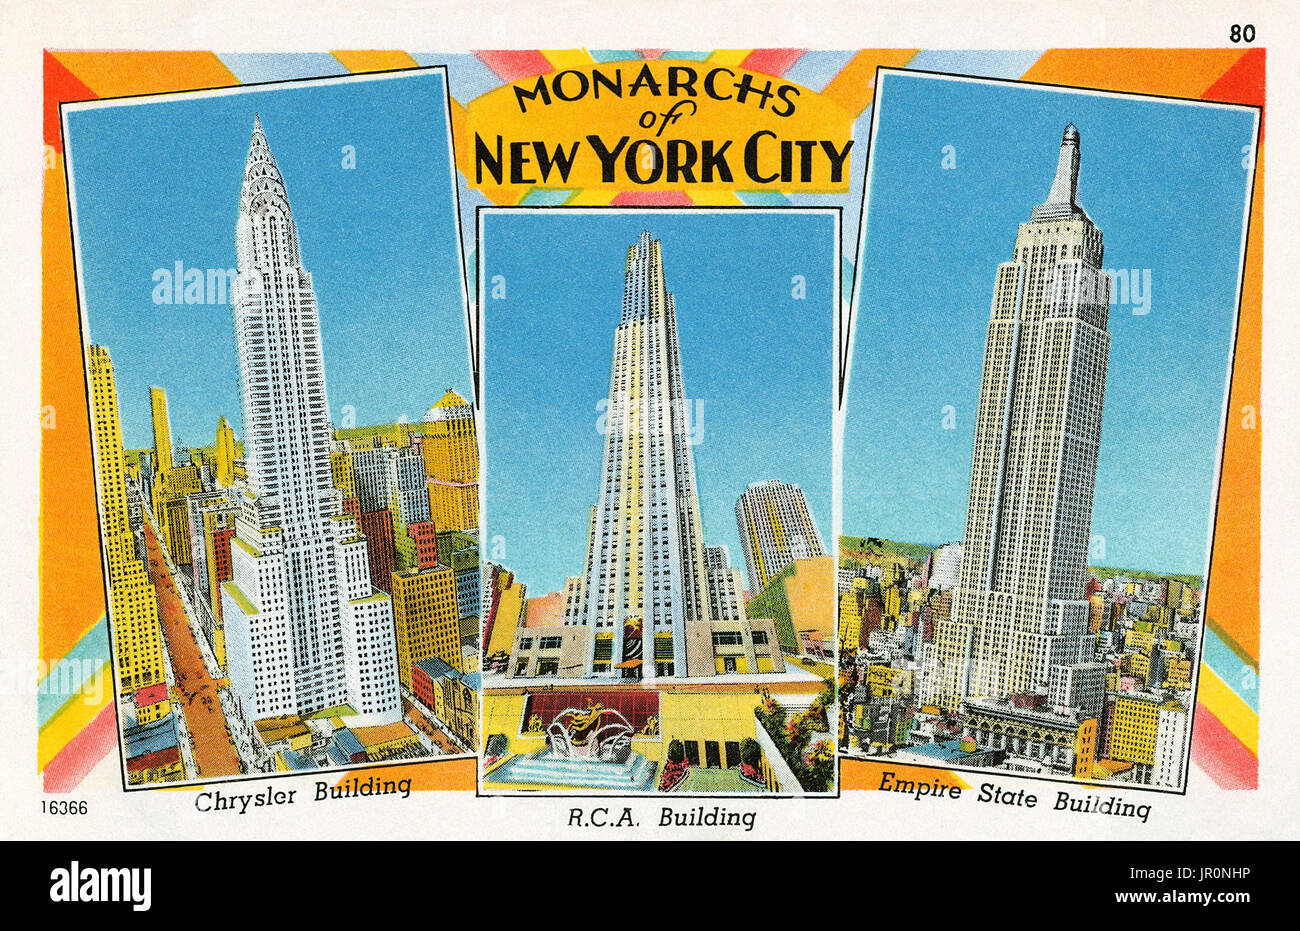 Vintage US-Postkarte "onarchs von New York', das Chrysler Building, das R.C.A. Gebäude und das Empire State Building. Stockfoto